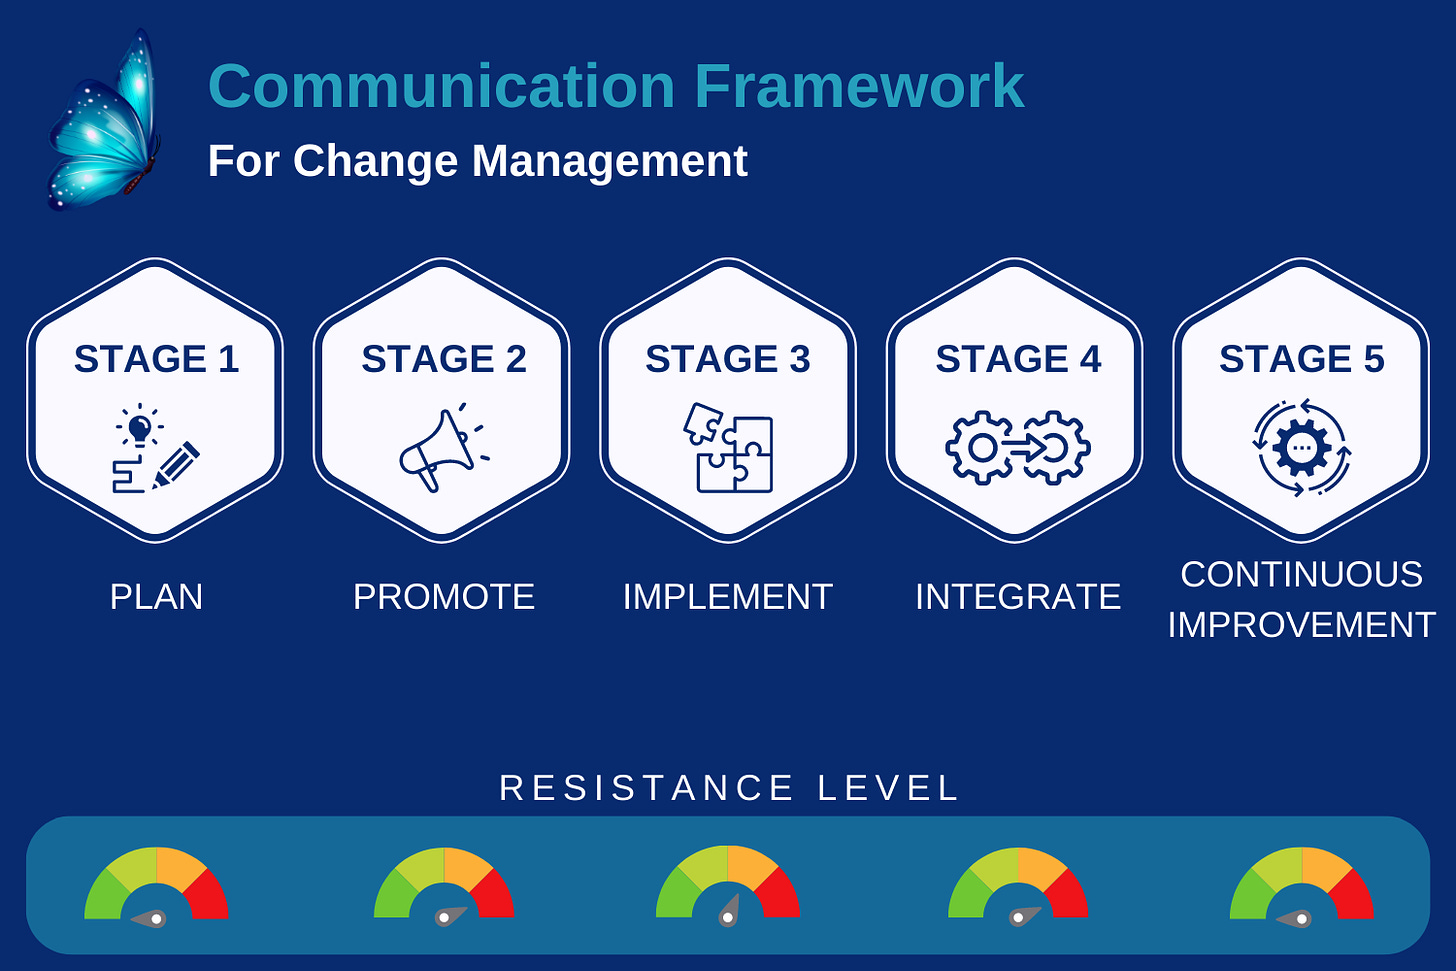 Communication framework for change management